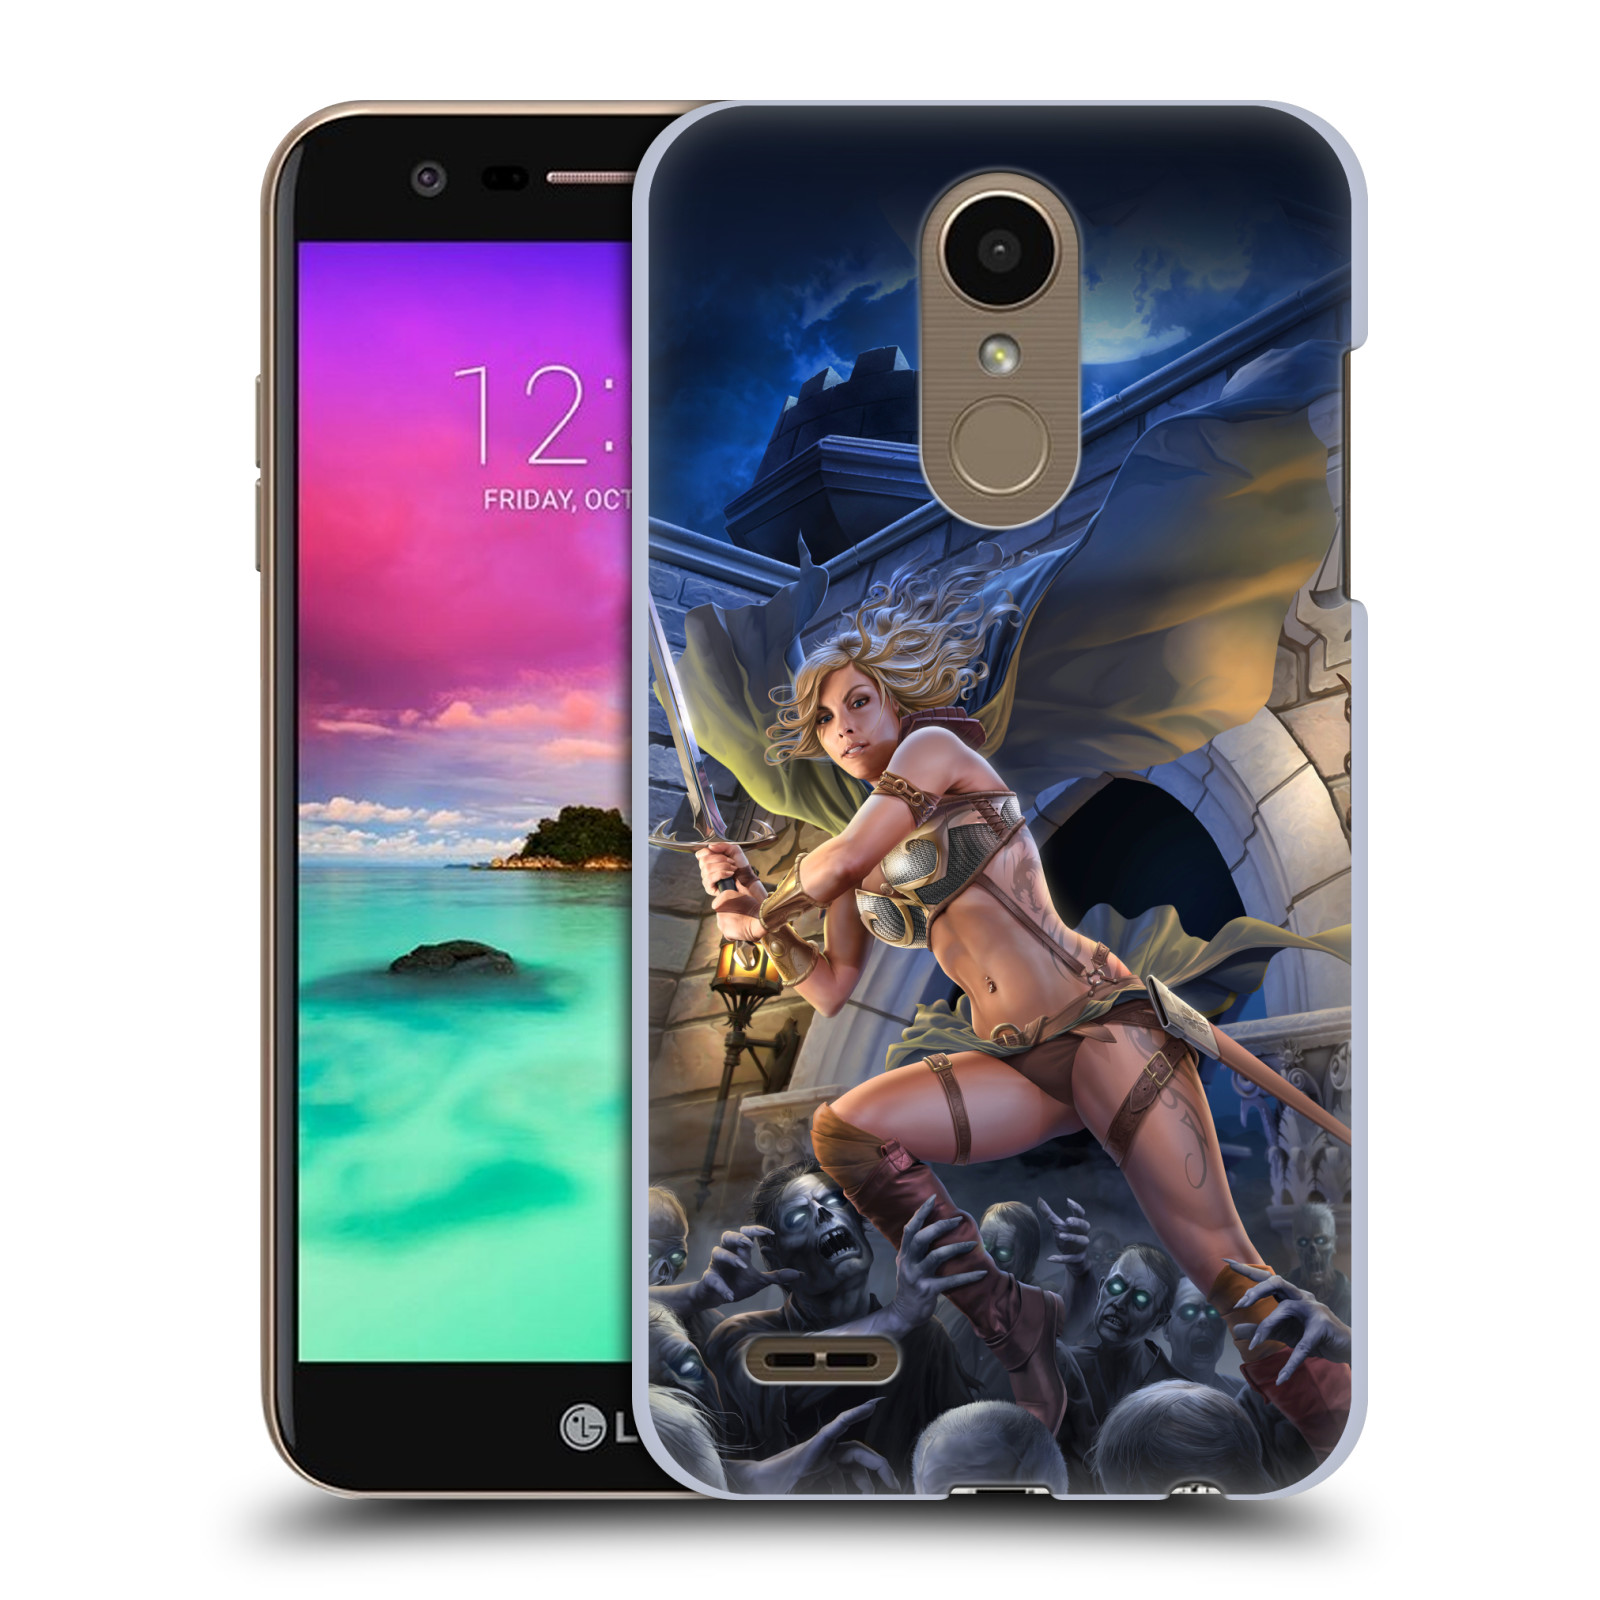 Pouzdro na mobil LG K10 2018 - HEAD CASE - Fantasy kresby Tom Wood - Princezna bojovnice a zombies